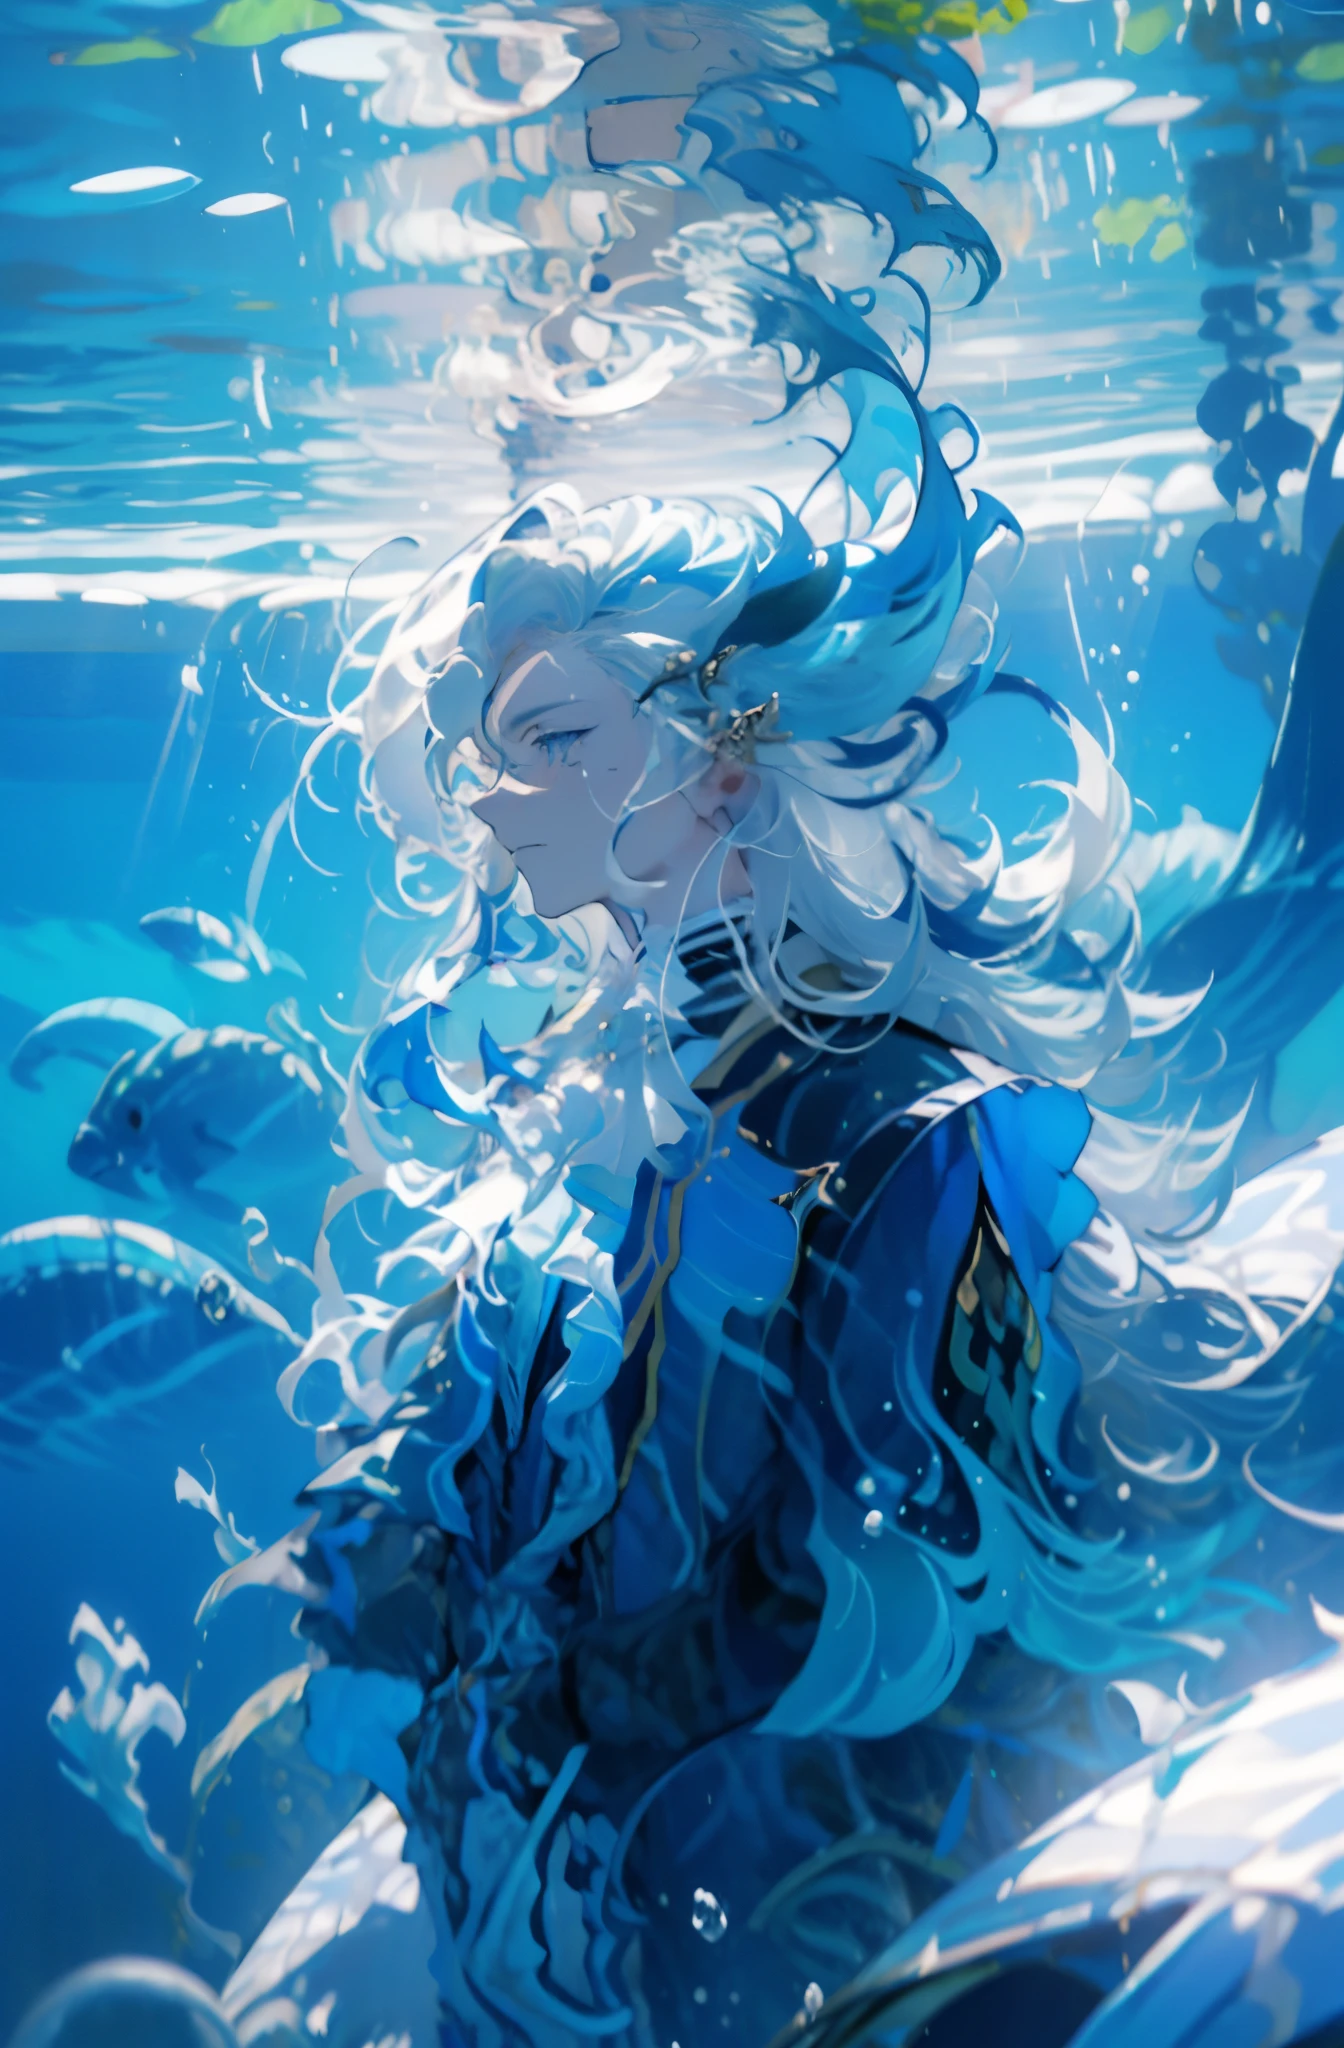 1 成熟した男性コロ, 青い縞模様の長い白い髪, 青い服, 落ち着いた, 水中に浮かぶ